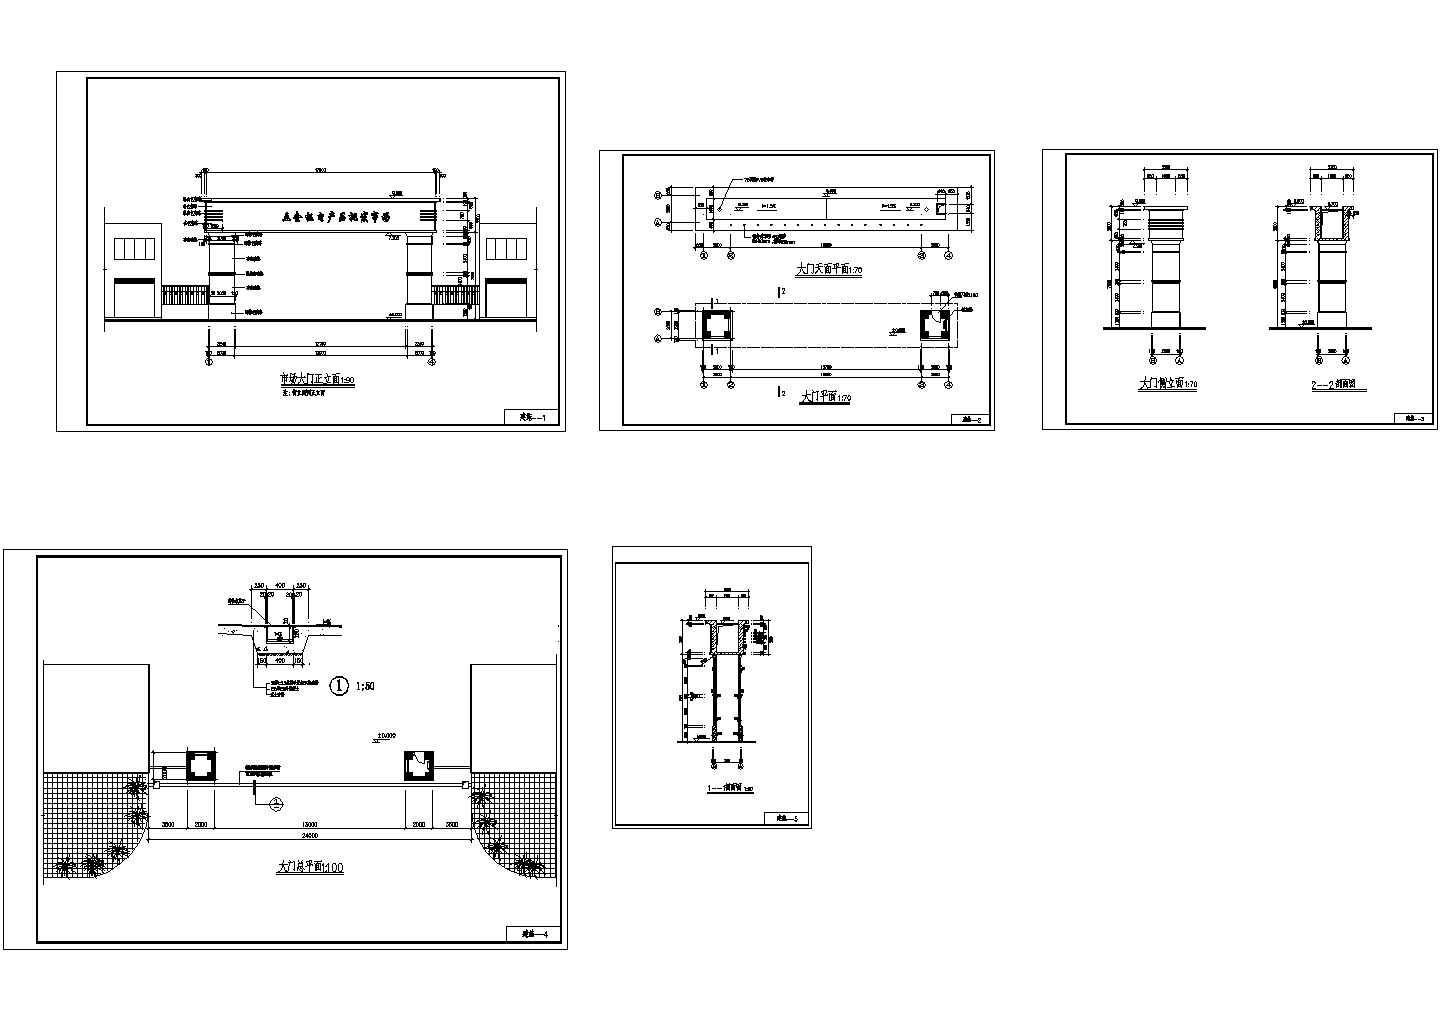 五金机电产品批发市场大门建筑施工CAD图纸